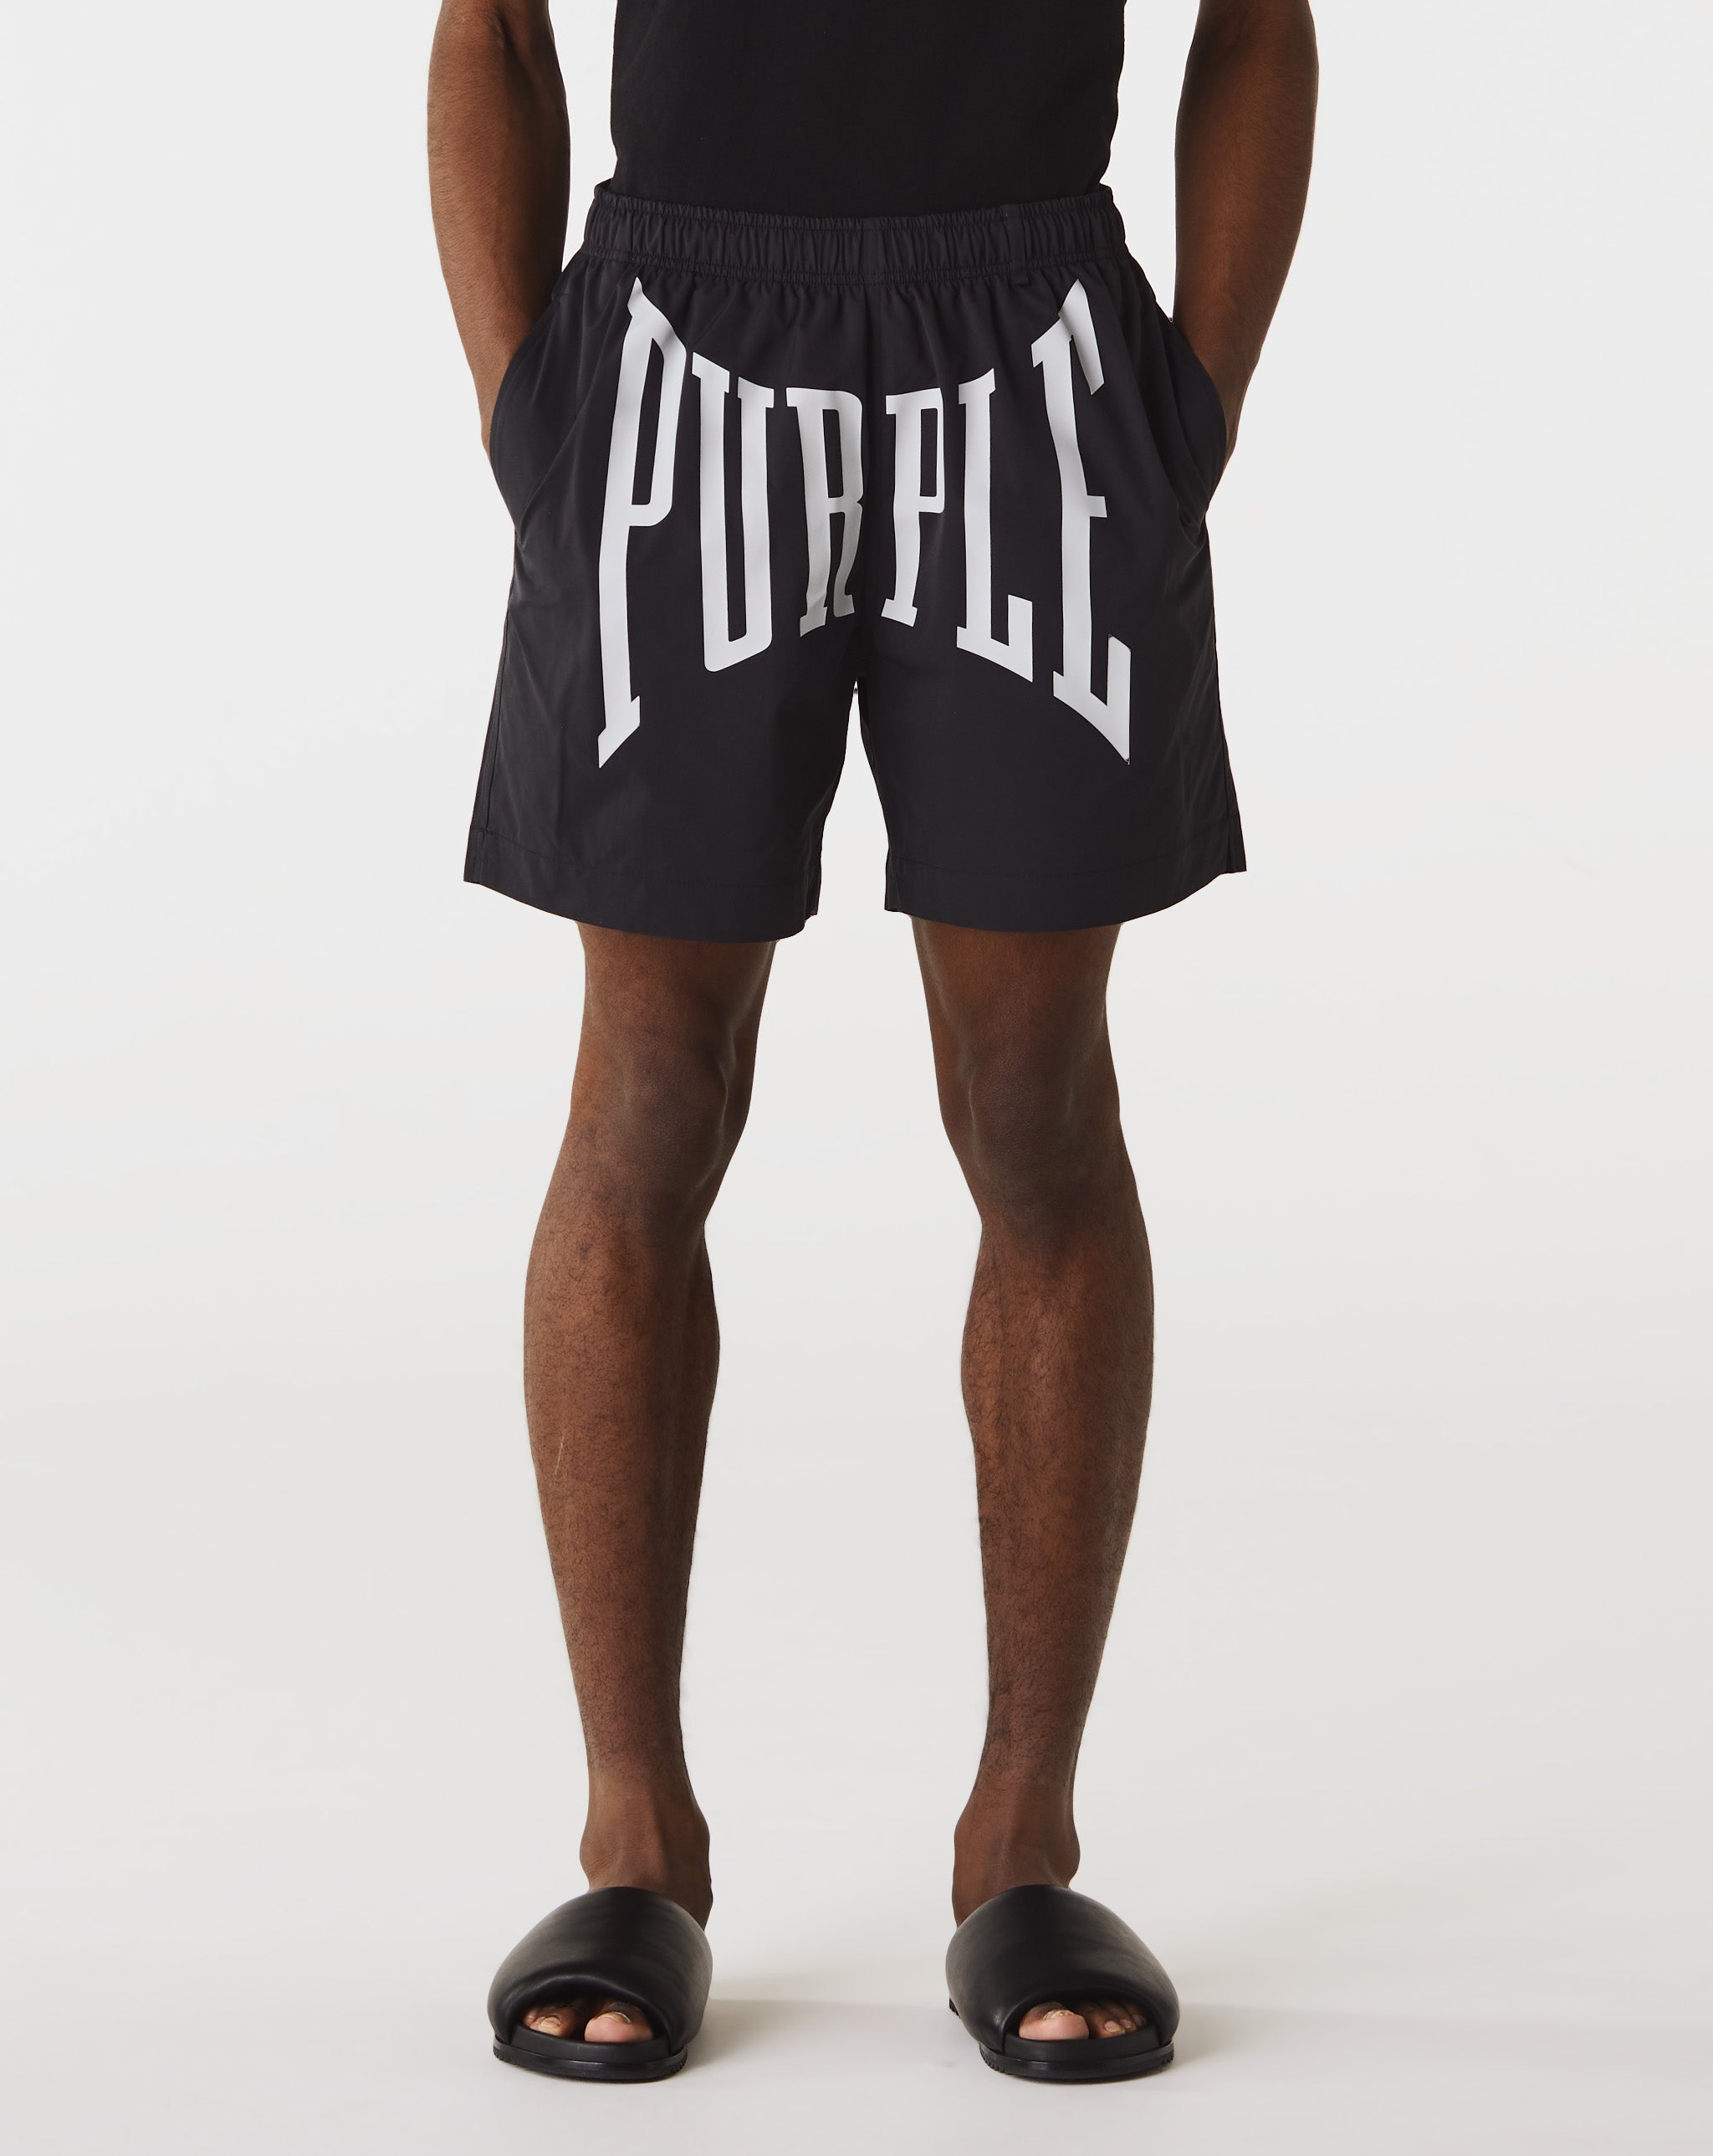 Purple Brand All Round Shorts  - Cheap Urlfreeze Jordan outlet